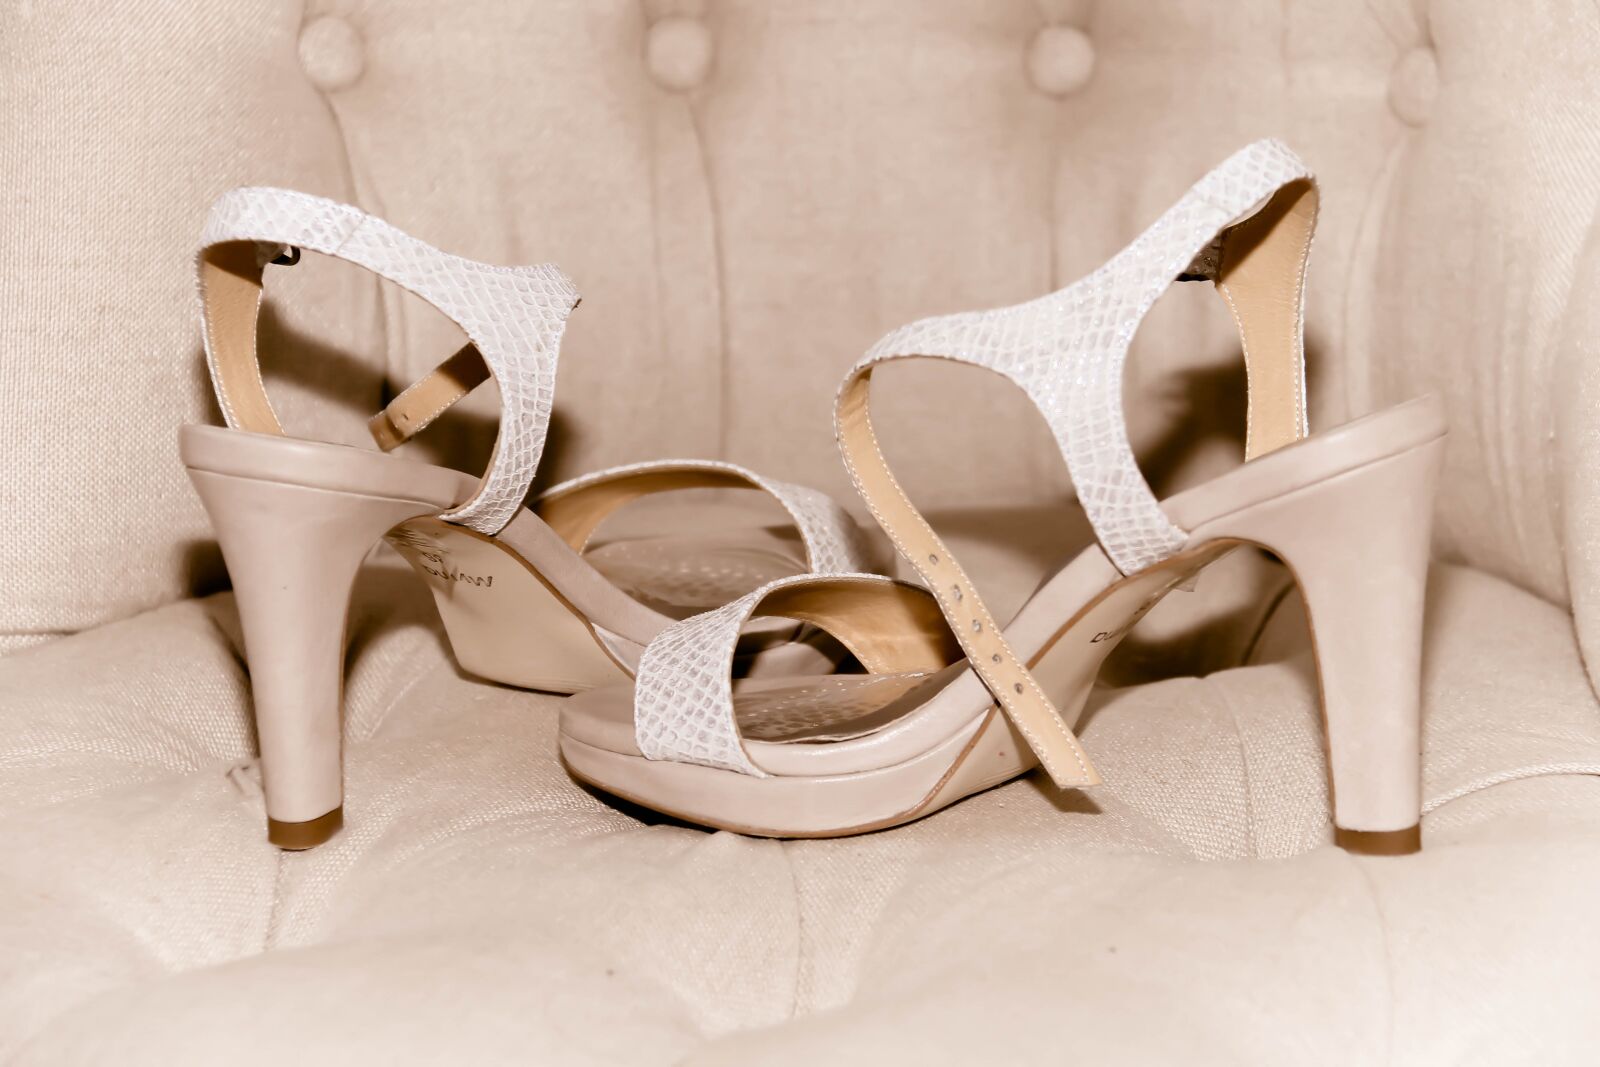 Canon EOS 70D sample photo. Shoes, women, wedding photography